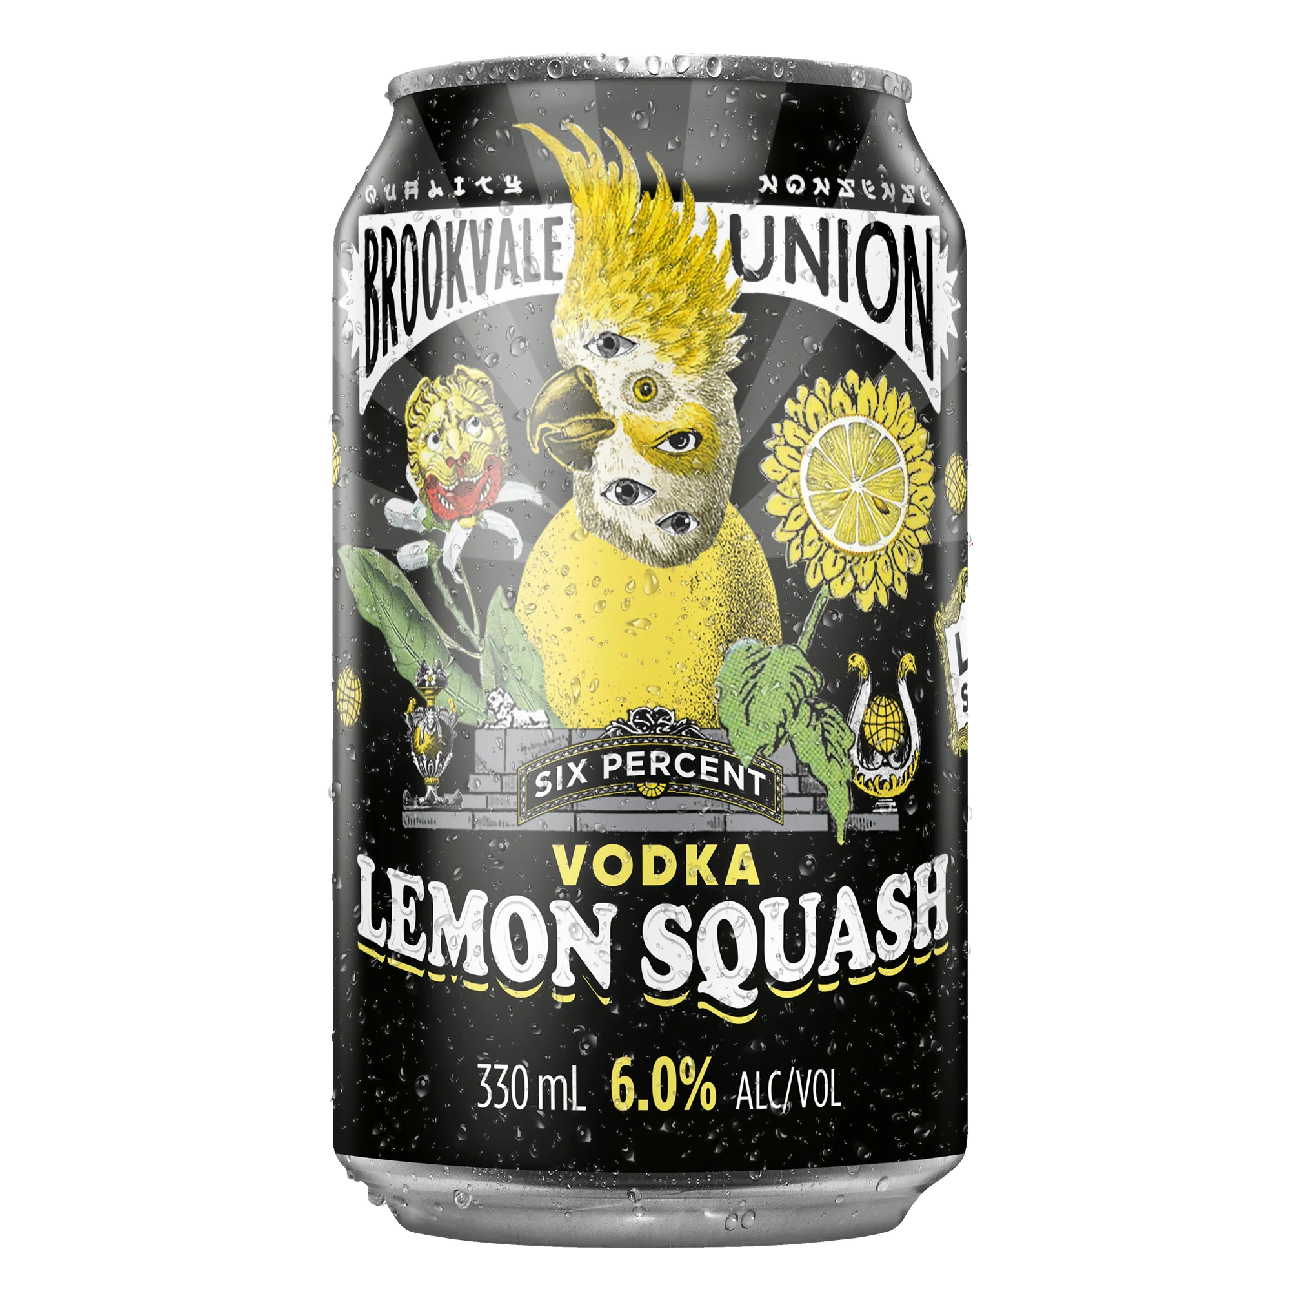 . Brookvale Union Vodka Lemon Squash 4% 10 Pack 330ml Cans (New) (Due Early June)